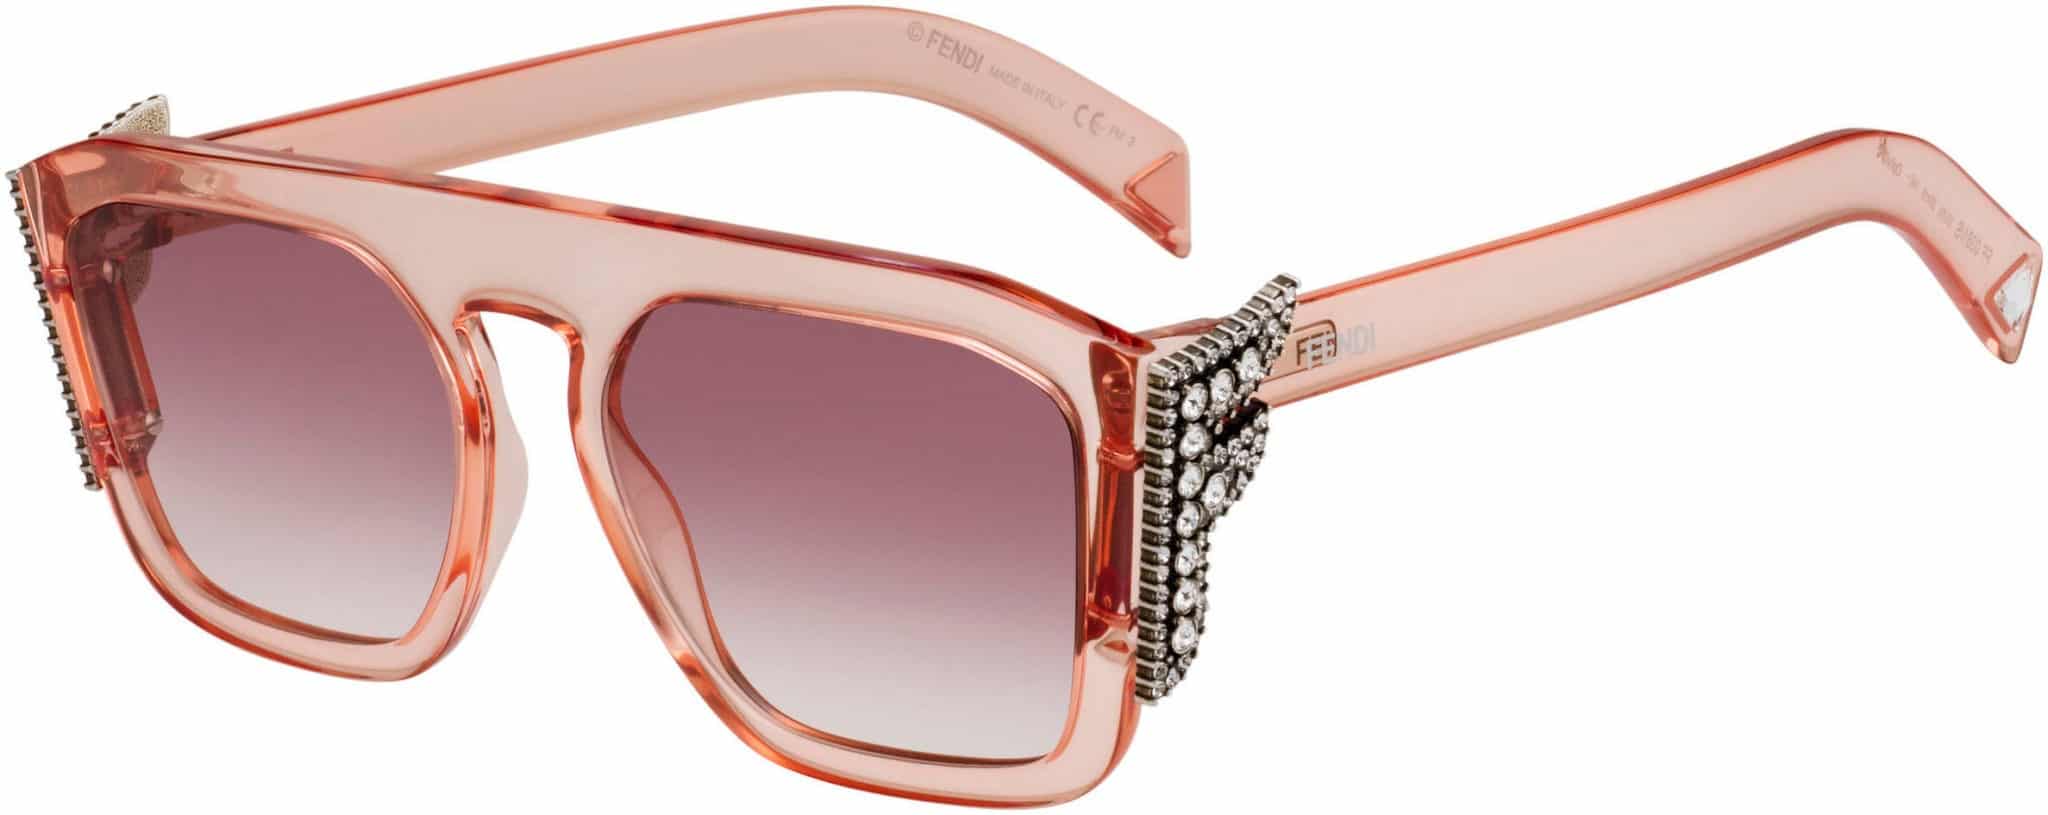 pink fendi glasses